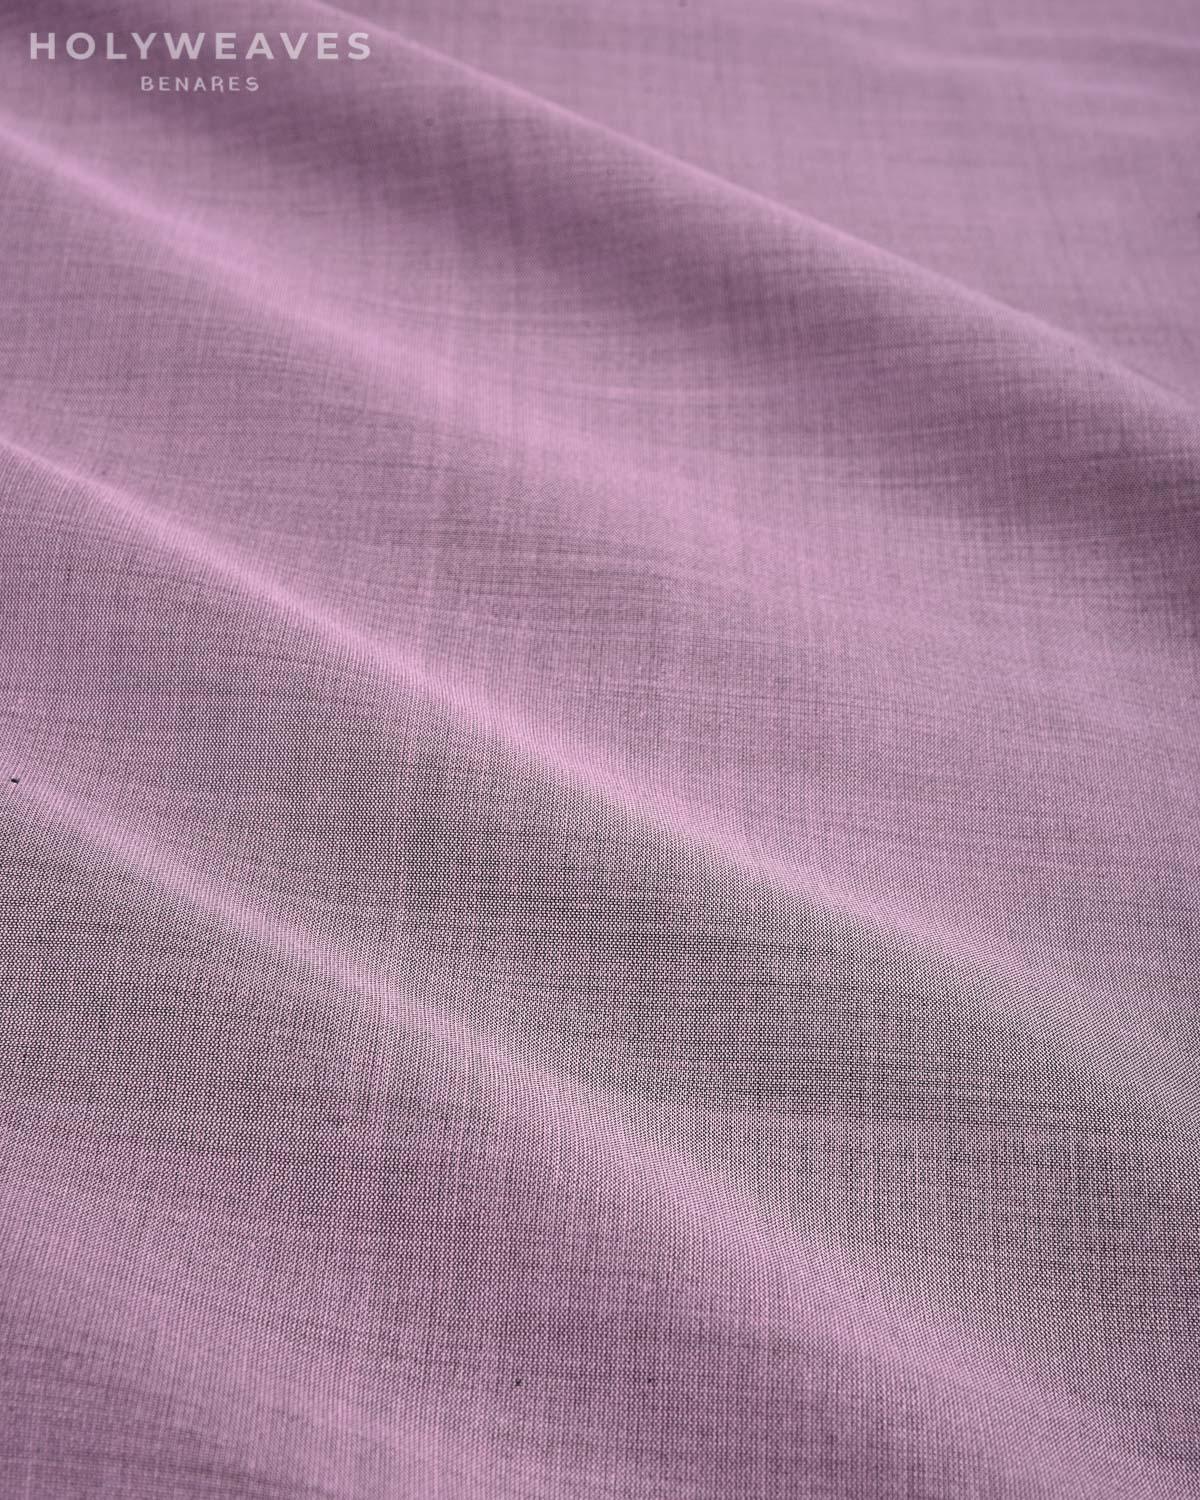 English Lavender Banarasi Plain Woven Spun Silk Fabric - By HolyWeaves, Benares